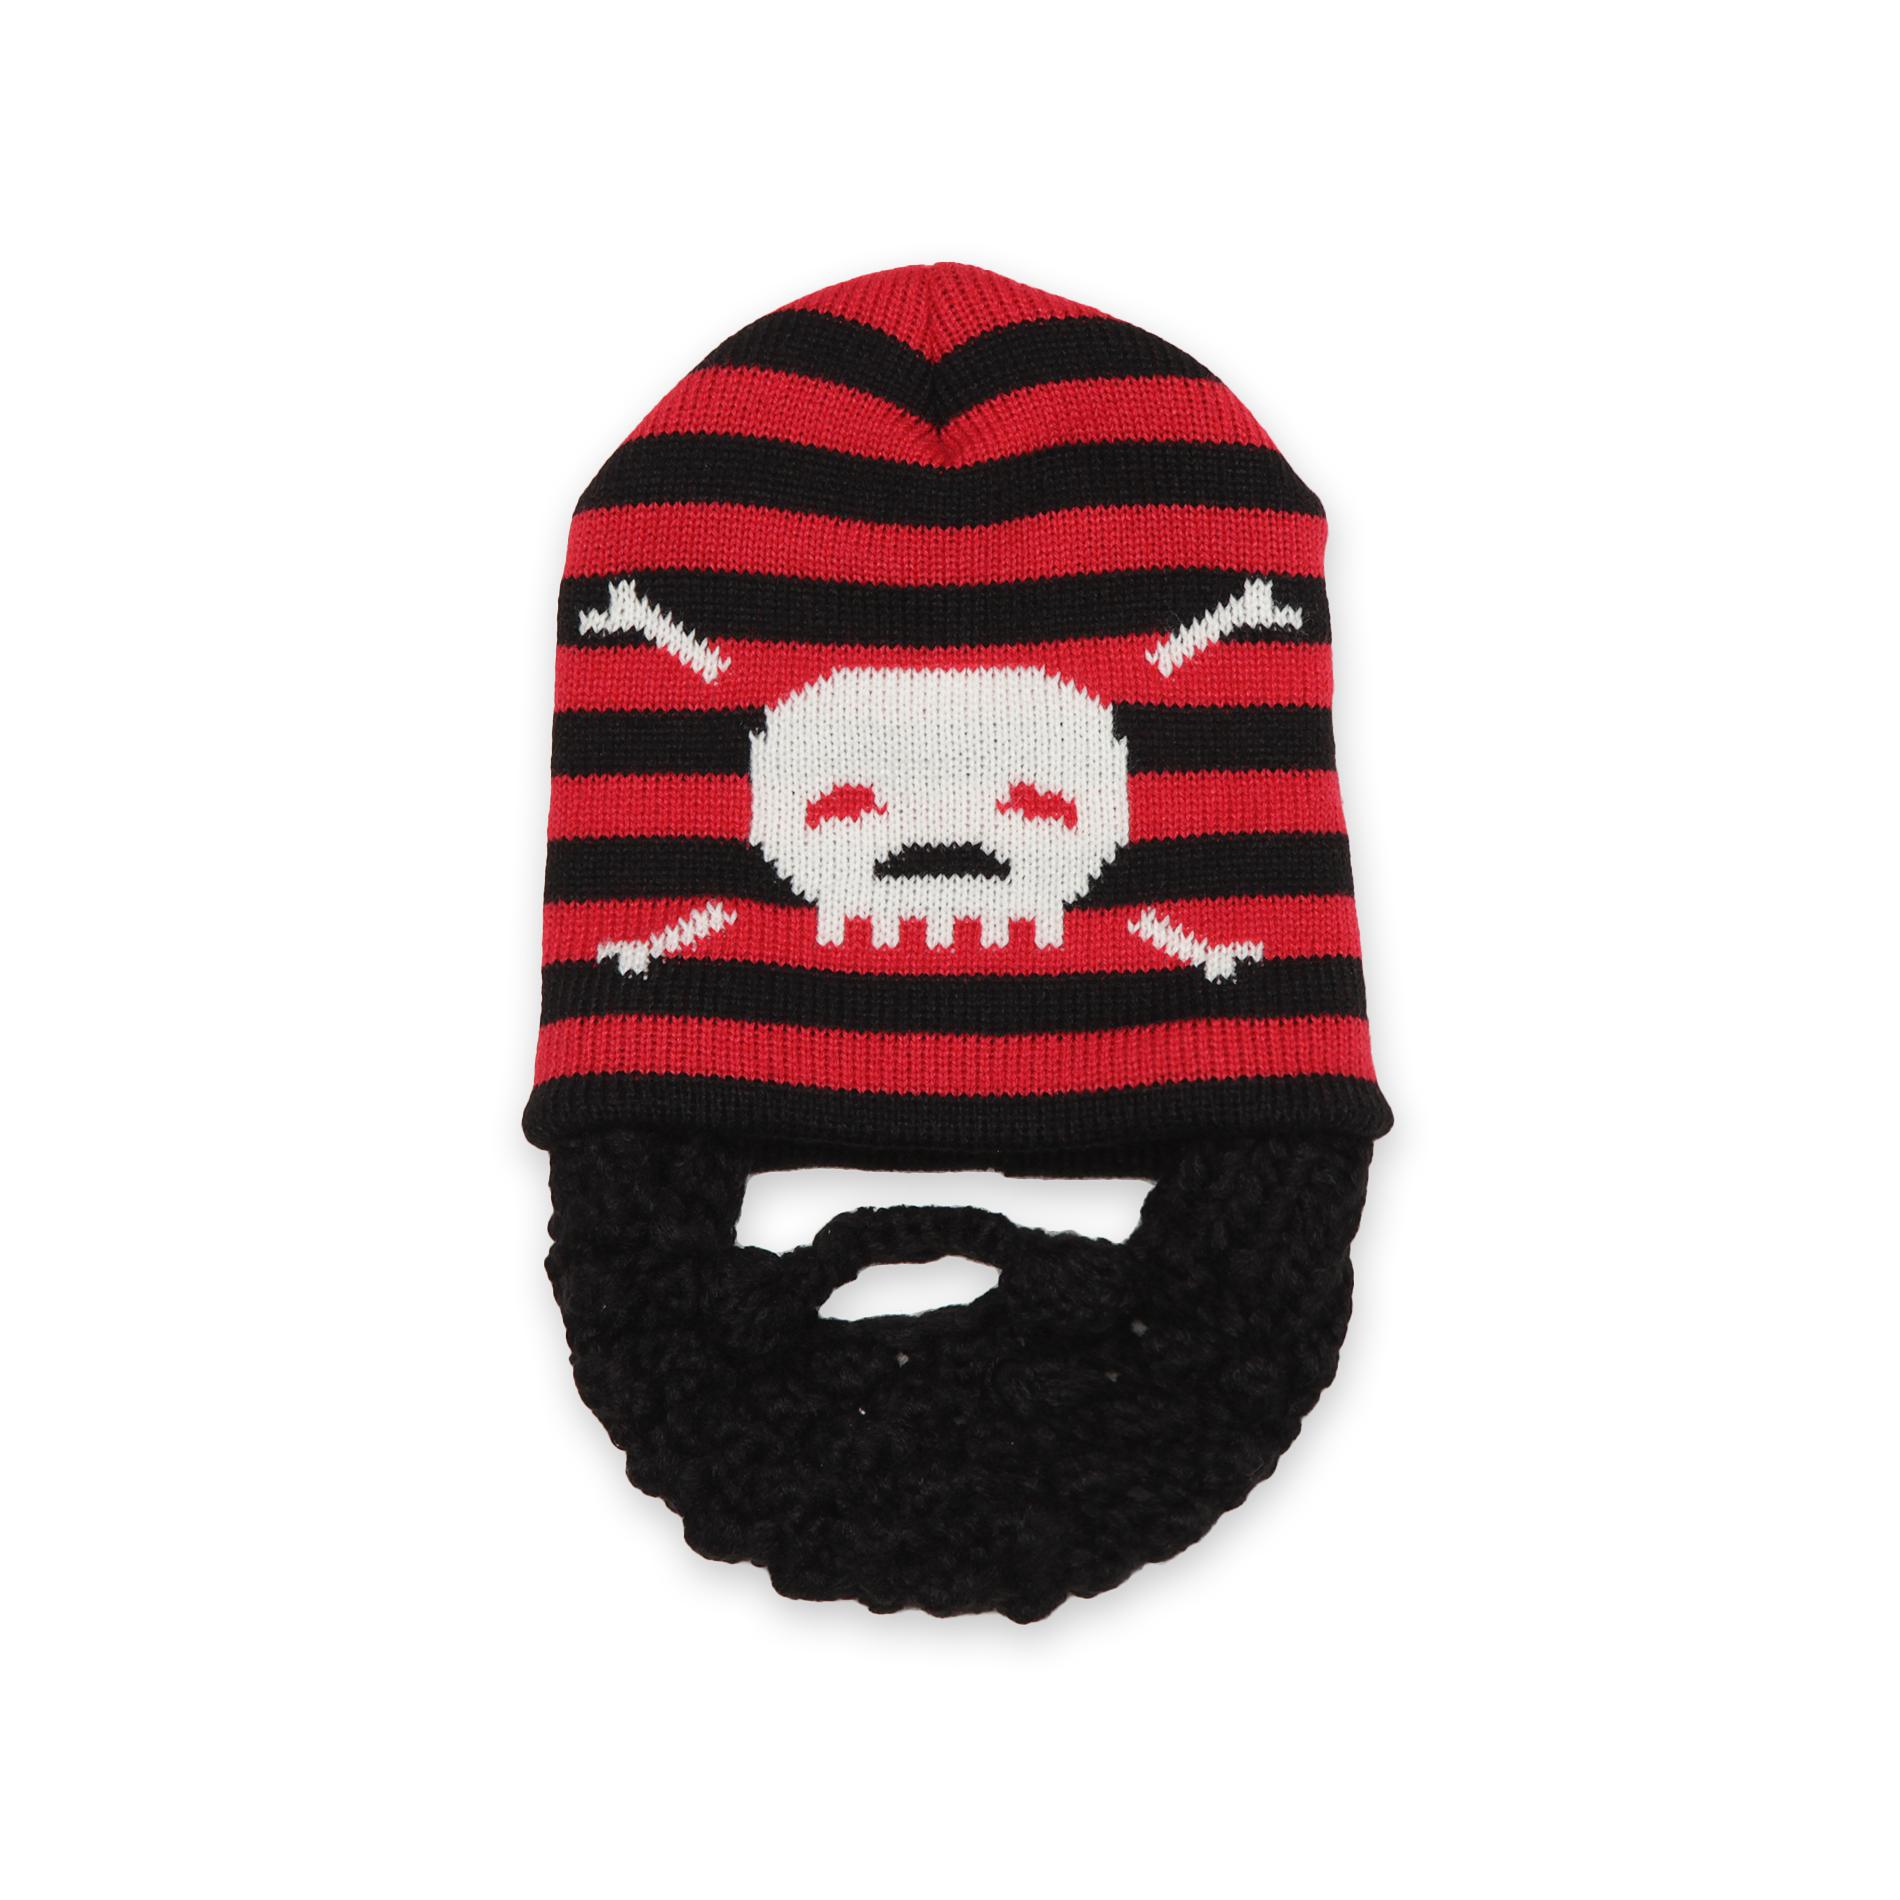 Joe Boxer Boy's Knit Beanie Hat - Pirate Beard